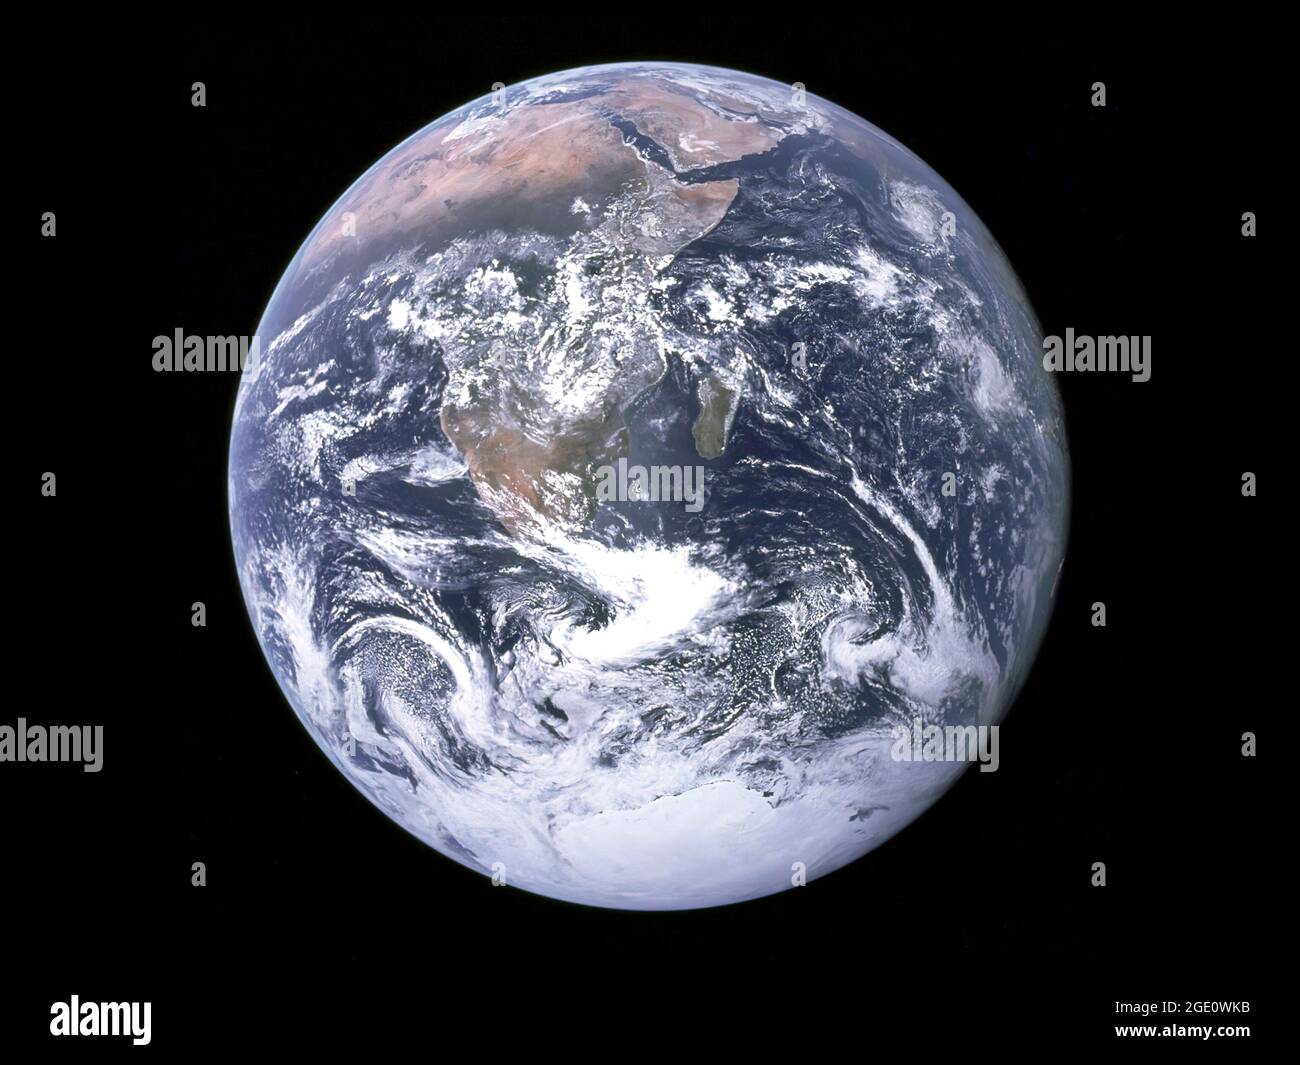 La vue en marbre bleu de la Terre telle que vue par l'équipage de l'Apollo 17 qui se déplace vers la lune. Cette photographie de la côte translunaire s'étend de la région de la mer Méditerranée à la calotte glaciaire polaire sud de l'Antarctique. C'est la première fois que la trajectoire d'Apollo permet de photographier la calotte glaciaire polaire sud. Notez la couverture nuageuse lourde dans l'hémisphère Sud. La quasi-totalité du littoral africain est clairement visible. La péninsule arabe est visible à la limite nord-est de l'Afrique. La grande île au large des côtes de l'Afrique est la République malgache. Banque D'Images